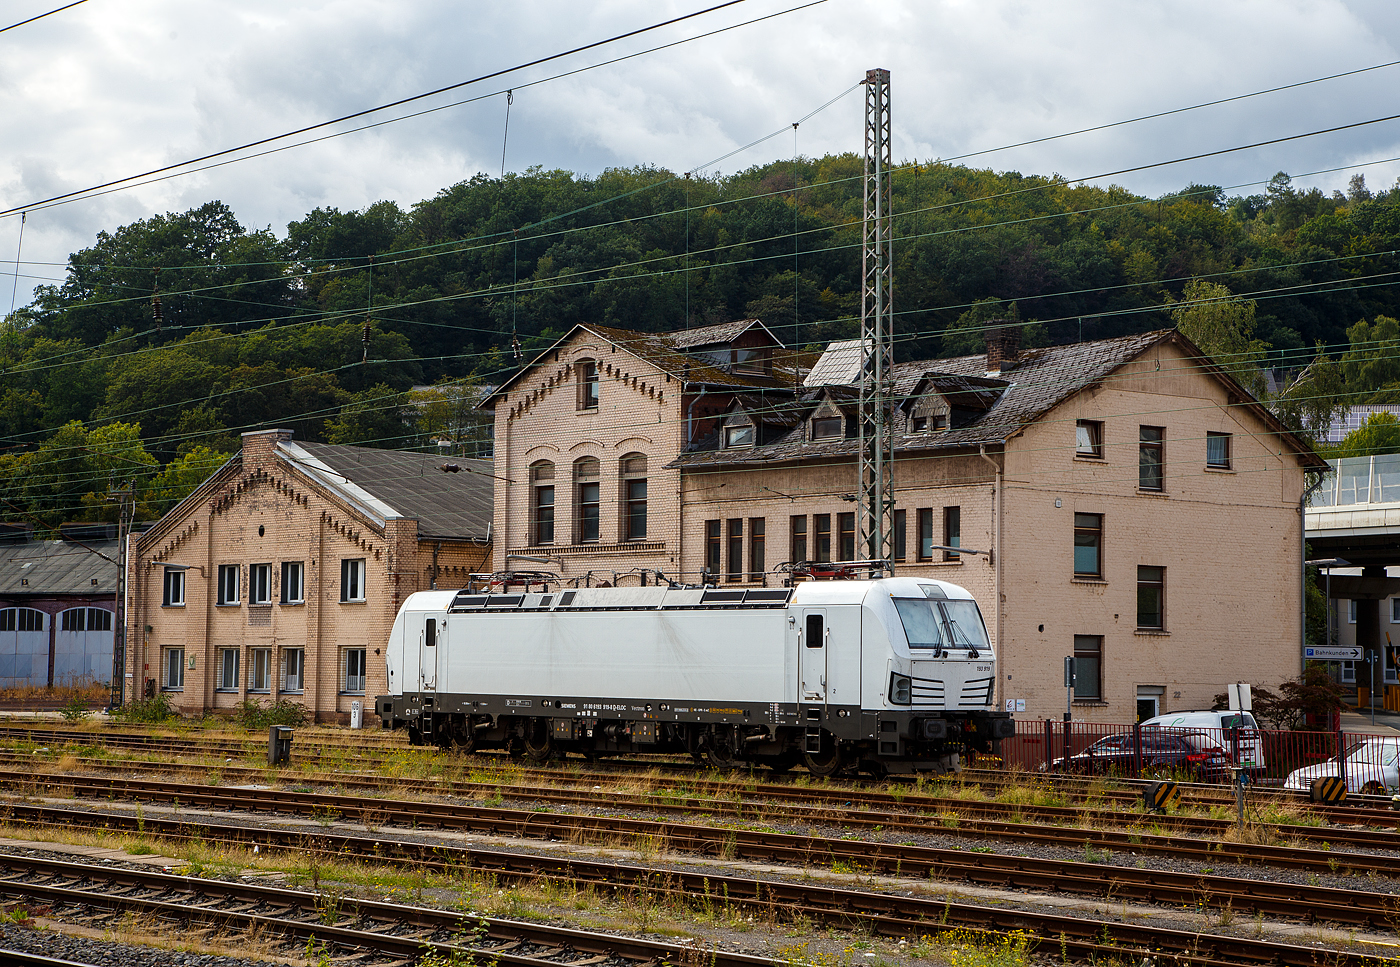 Die an die SETG - Salzburger Eisenbahn TransportLogistik GmbH vermietete weiße SIEMENS Vectron AC DPM 193 919 (91 80 6193 919-8 D-ELOC) der ELL - European Locomotive Leasing ist am 28.08.2023 beim Hbf Siegen abgestellt.

Die SIEMENS Vectron AC DPM mit Diesel Power Modul  bzw. mit LM (Last Mile Diesel) wurde 2022 von Siemens Mobilitiy in München-Allach unter der Fabriknummer 22968 gebaut. Diese Vectron Lokomotive ist als AC DPM – Lokomotive (Wechselstrom-Variante mit Dieselmodul für Rangieren ohne Fahrdraht) mit 6.400 kW konzipiert und zugelassen für Deutschland, Österreich, Bulgarien, Slowakei, Rumänien, Tschechien und Ungarn (D/A/BG/SK/RO/CZ/H), im Dieselbetrieb beträgt die Leistung lediglich 180 kW (160 kW am Rad). 

Diese topmodernen Lokomotiven weisen eine Leistung von 6.400 kW (8.700 PS) auf. Das eingebaute Diesel-Power-Modul ermöglicht das Rangieren ohne Fahrdraht. Zusätzlich sind die Vectron-Lokomotiven von Siemens mit einer Funkfernsteuerung und einer halbautomatischen Bremsprobe ausgerüstet. 

Die Entwicklung der Siemens Lokomotive Vectron basiert auf den Erfahrungen der erfolgreichen EuroSprinter beziehungsweise deren Weiterentwicklung Siemens ES 2007 (NMBS/SNCB-Reihe 18/19) ersetzt. Ausgereifte und bewährte Technik ist mit Flexibilität und Modularität kombiniert. Die Vectron Lokomotive ist für die vielfältigsten Verkehrsaufgaben konzipiert. Ob im nationalen oder grenzüberschreitenden Verkehr, ob im Personen- oder Güterverkehr. Es werden vier elektrische Versionen und eine dieselelektrische Version der Lokomotivplattform angeboten. Die hier gezeigten Vectron Lokomotiven sind als AC – Lokomotiven (Wechselstromlok) mit 6.400 kW Leistung) konzipiert und haben ein Diesel Power Modules (DPM) / Rangiermodul bzw. Last Mile (LM).

Die äußere Gestaltung der Vectron-Lokomotiven unterscheidet sich nur wenig von der der Siemens ES 2007; insbesondere wird das der Crashnorm entsprechende Kopfmodul bis auf einige Detailänderungen, etwa Rückblickkamera statt Seitenfenster, übernommen. Innen ist der neue Typ hingegen komplett anders aufgebaut. Der Maschinenraum besitzt im Gegensatz zur Bombardier TRAXX einen geraden Mittelgang, an dessen Seiten alle Komponenten einen festen Platz haben. In einem unter dem Boden verlaufenden Kanal verlaufen die Steuerleitungen und Druckluftrohre. Die Radsätze werden über gefederte Ritzel-Hohlwellen angetrieben.

Der Vectron unterstützt mit einer optimierten Systemauslegung und vielfältigen Funktionen für energieoptimales Abstellen. Der elektrische Vectron ermöglicht eine erhöhte elektrische Bremskraft von 240 kN. Die rückgewonnene Energie wird hocheffizient für die Versorgung von Hilfsbetrieben genutzt bzw. und wo möglich ins Netz zurückgespeist.

TECHNISCHE DATEN der Vectron AC DPM:
Spurweite: 1.435 mm
Achsformel: Bo'Bo'
Länge über Puffer: 18.980 mm
Drehzapfenabstand: 9.500 mm
Achsabstand im Drehgestell: 3.000 mm
Breite: 3.012 mm
Höhe: 4.248 mm
Raddurchmesser : 1.250 mm (neu) / 1.160 mm (abgenutzt)
Gewicht: 90 t
Spannungssysteme: 15 kV, 16,7 Hz AC (Wechselstrom)
Max. Leistung am Rad: 6.400 kW
Leistungsfaktor: nahe 1
Höchstgeschwindigkeit: 160 km/h
Anfahrzugskraft: 300 kN
Dauerzugkraft: 250 kN
Elektrische Bremskraft: 240 kN
Kraftübertragung: Ritzelhohlwellenantrieb
Lichtraumprofil: UIC 505-1

Leistungsdaten DPM (Diesel Power Modul):
Max. Geschwindigkeit : 40 km/h
Leistung: 180 kW (160 kW am Rad)
Tankvolumen der DPM:  350 l (Diesel)
